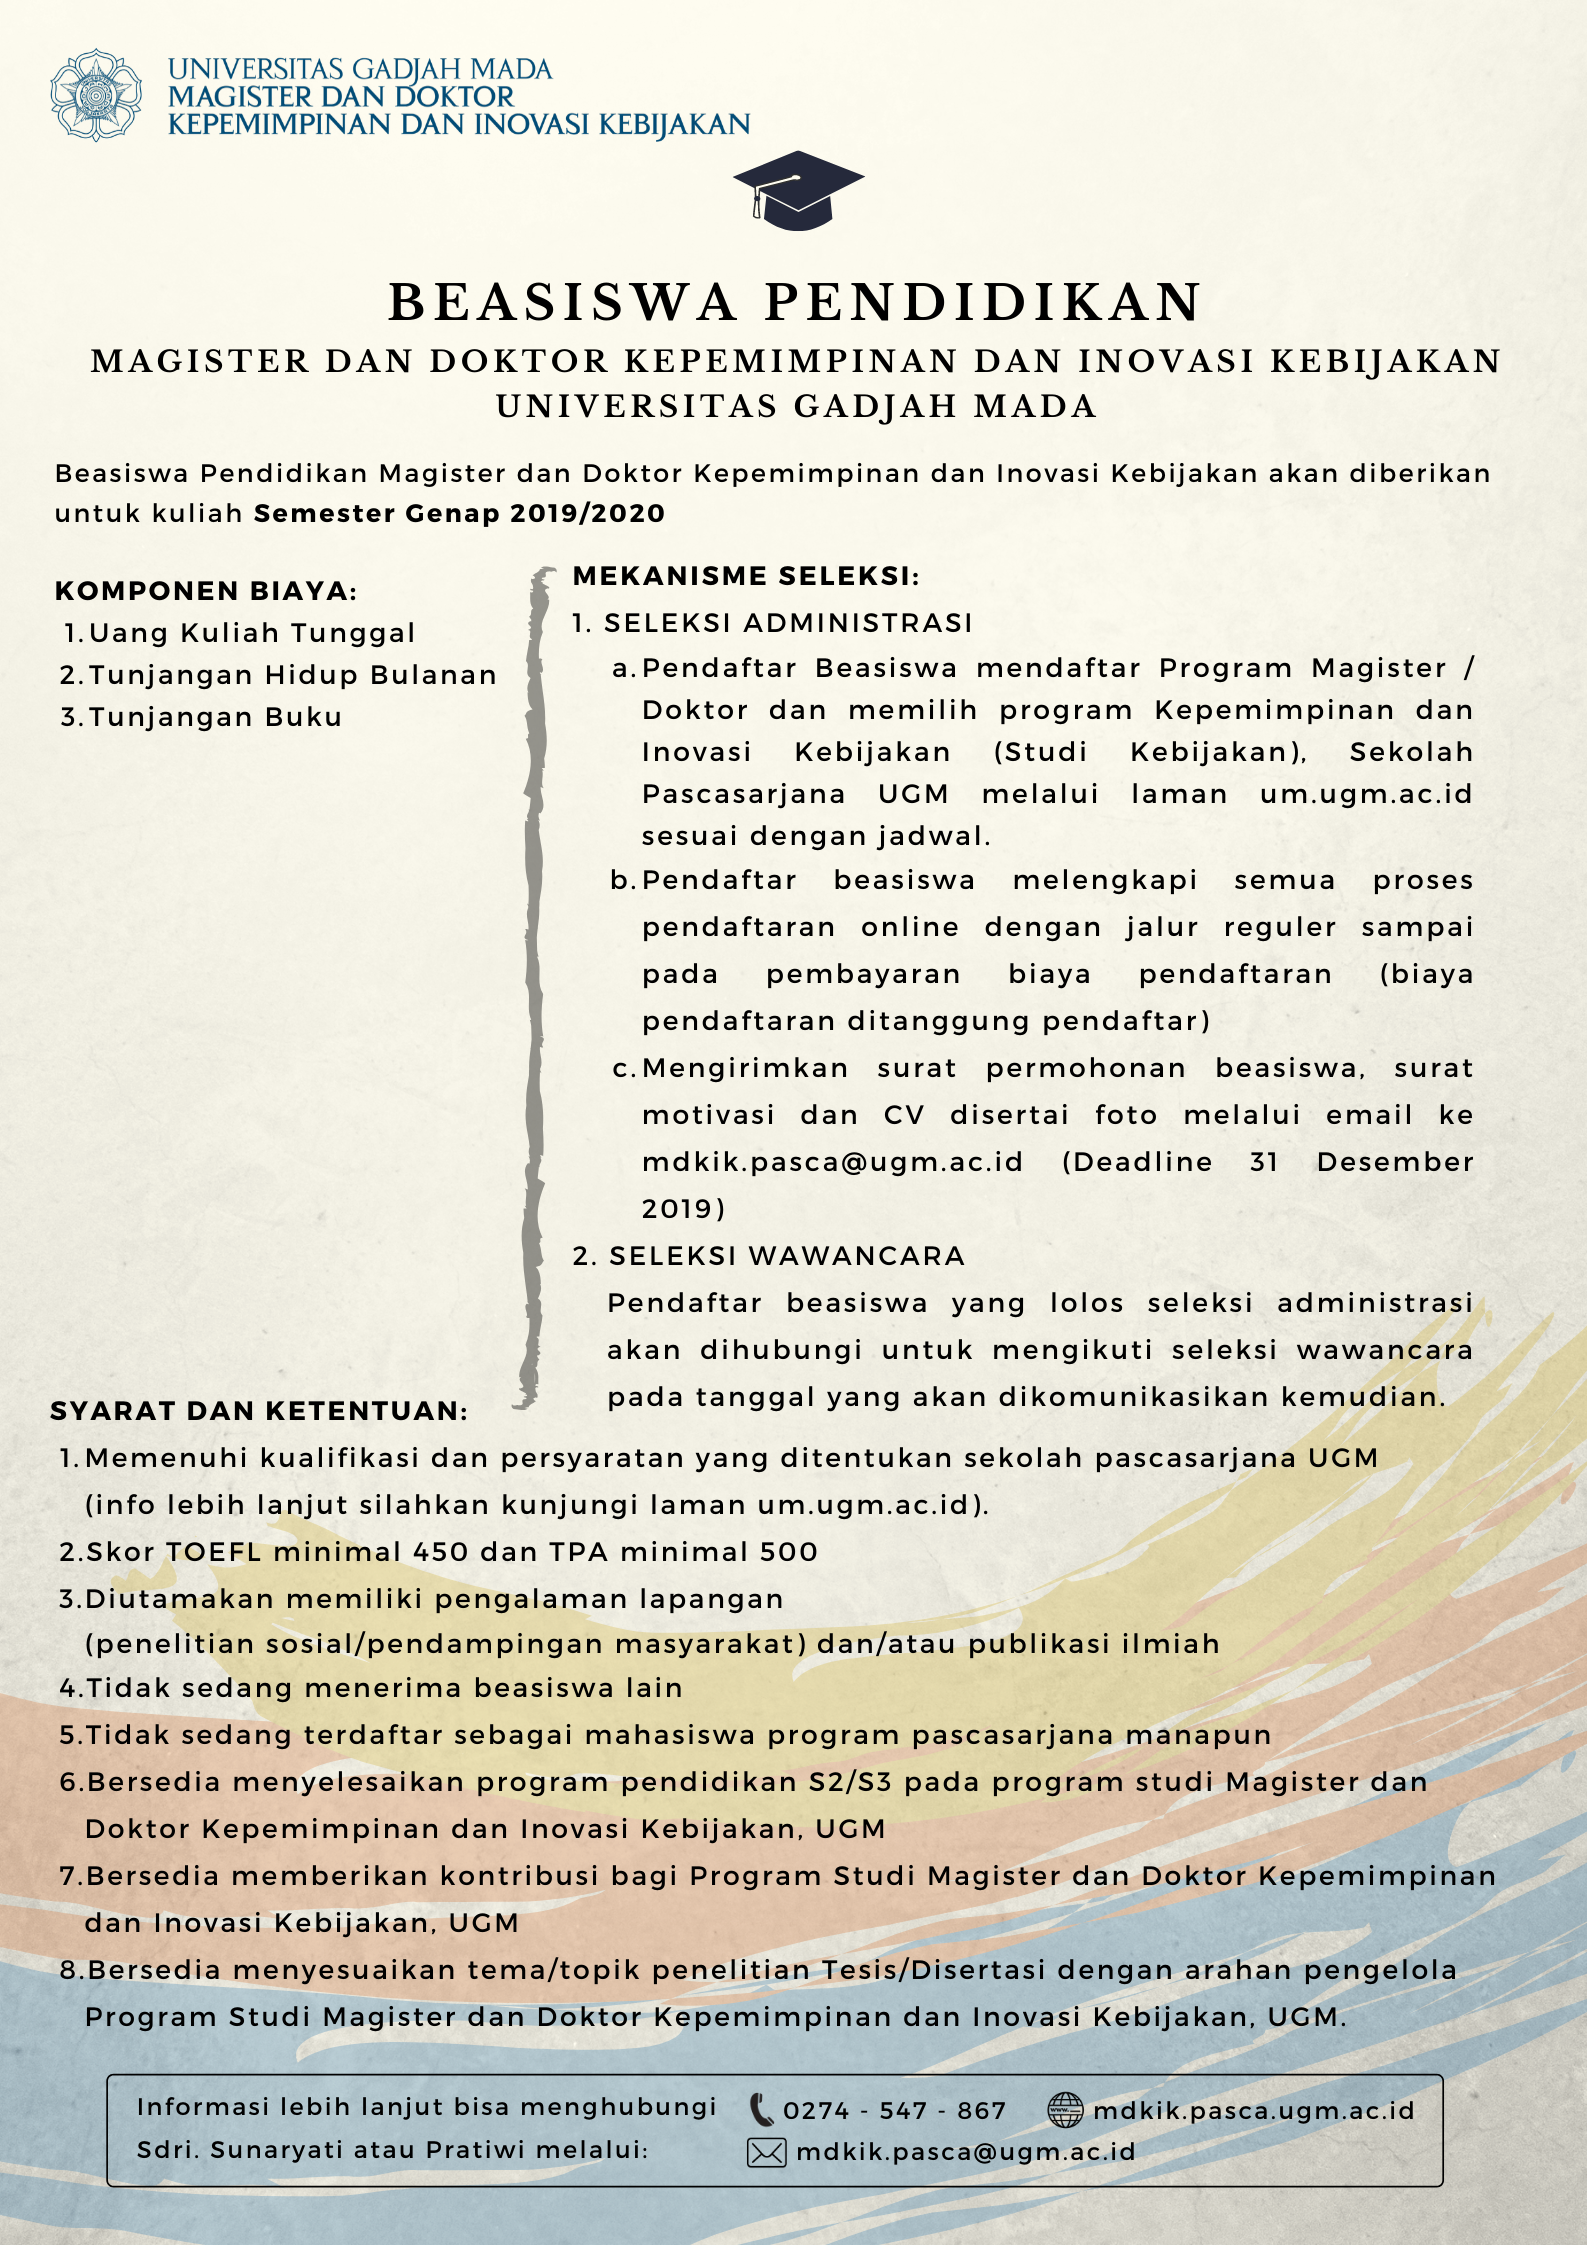 Beasiswa Prodi Mdkik Ugm (Deadline 31 Desember 2019) – Magister Dan Doktor Kepemimpinan Dan Inovasi Kebijakan (Mdkik)